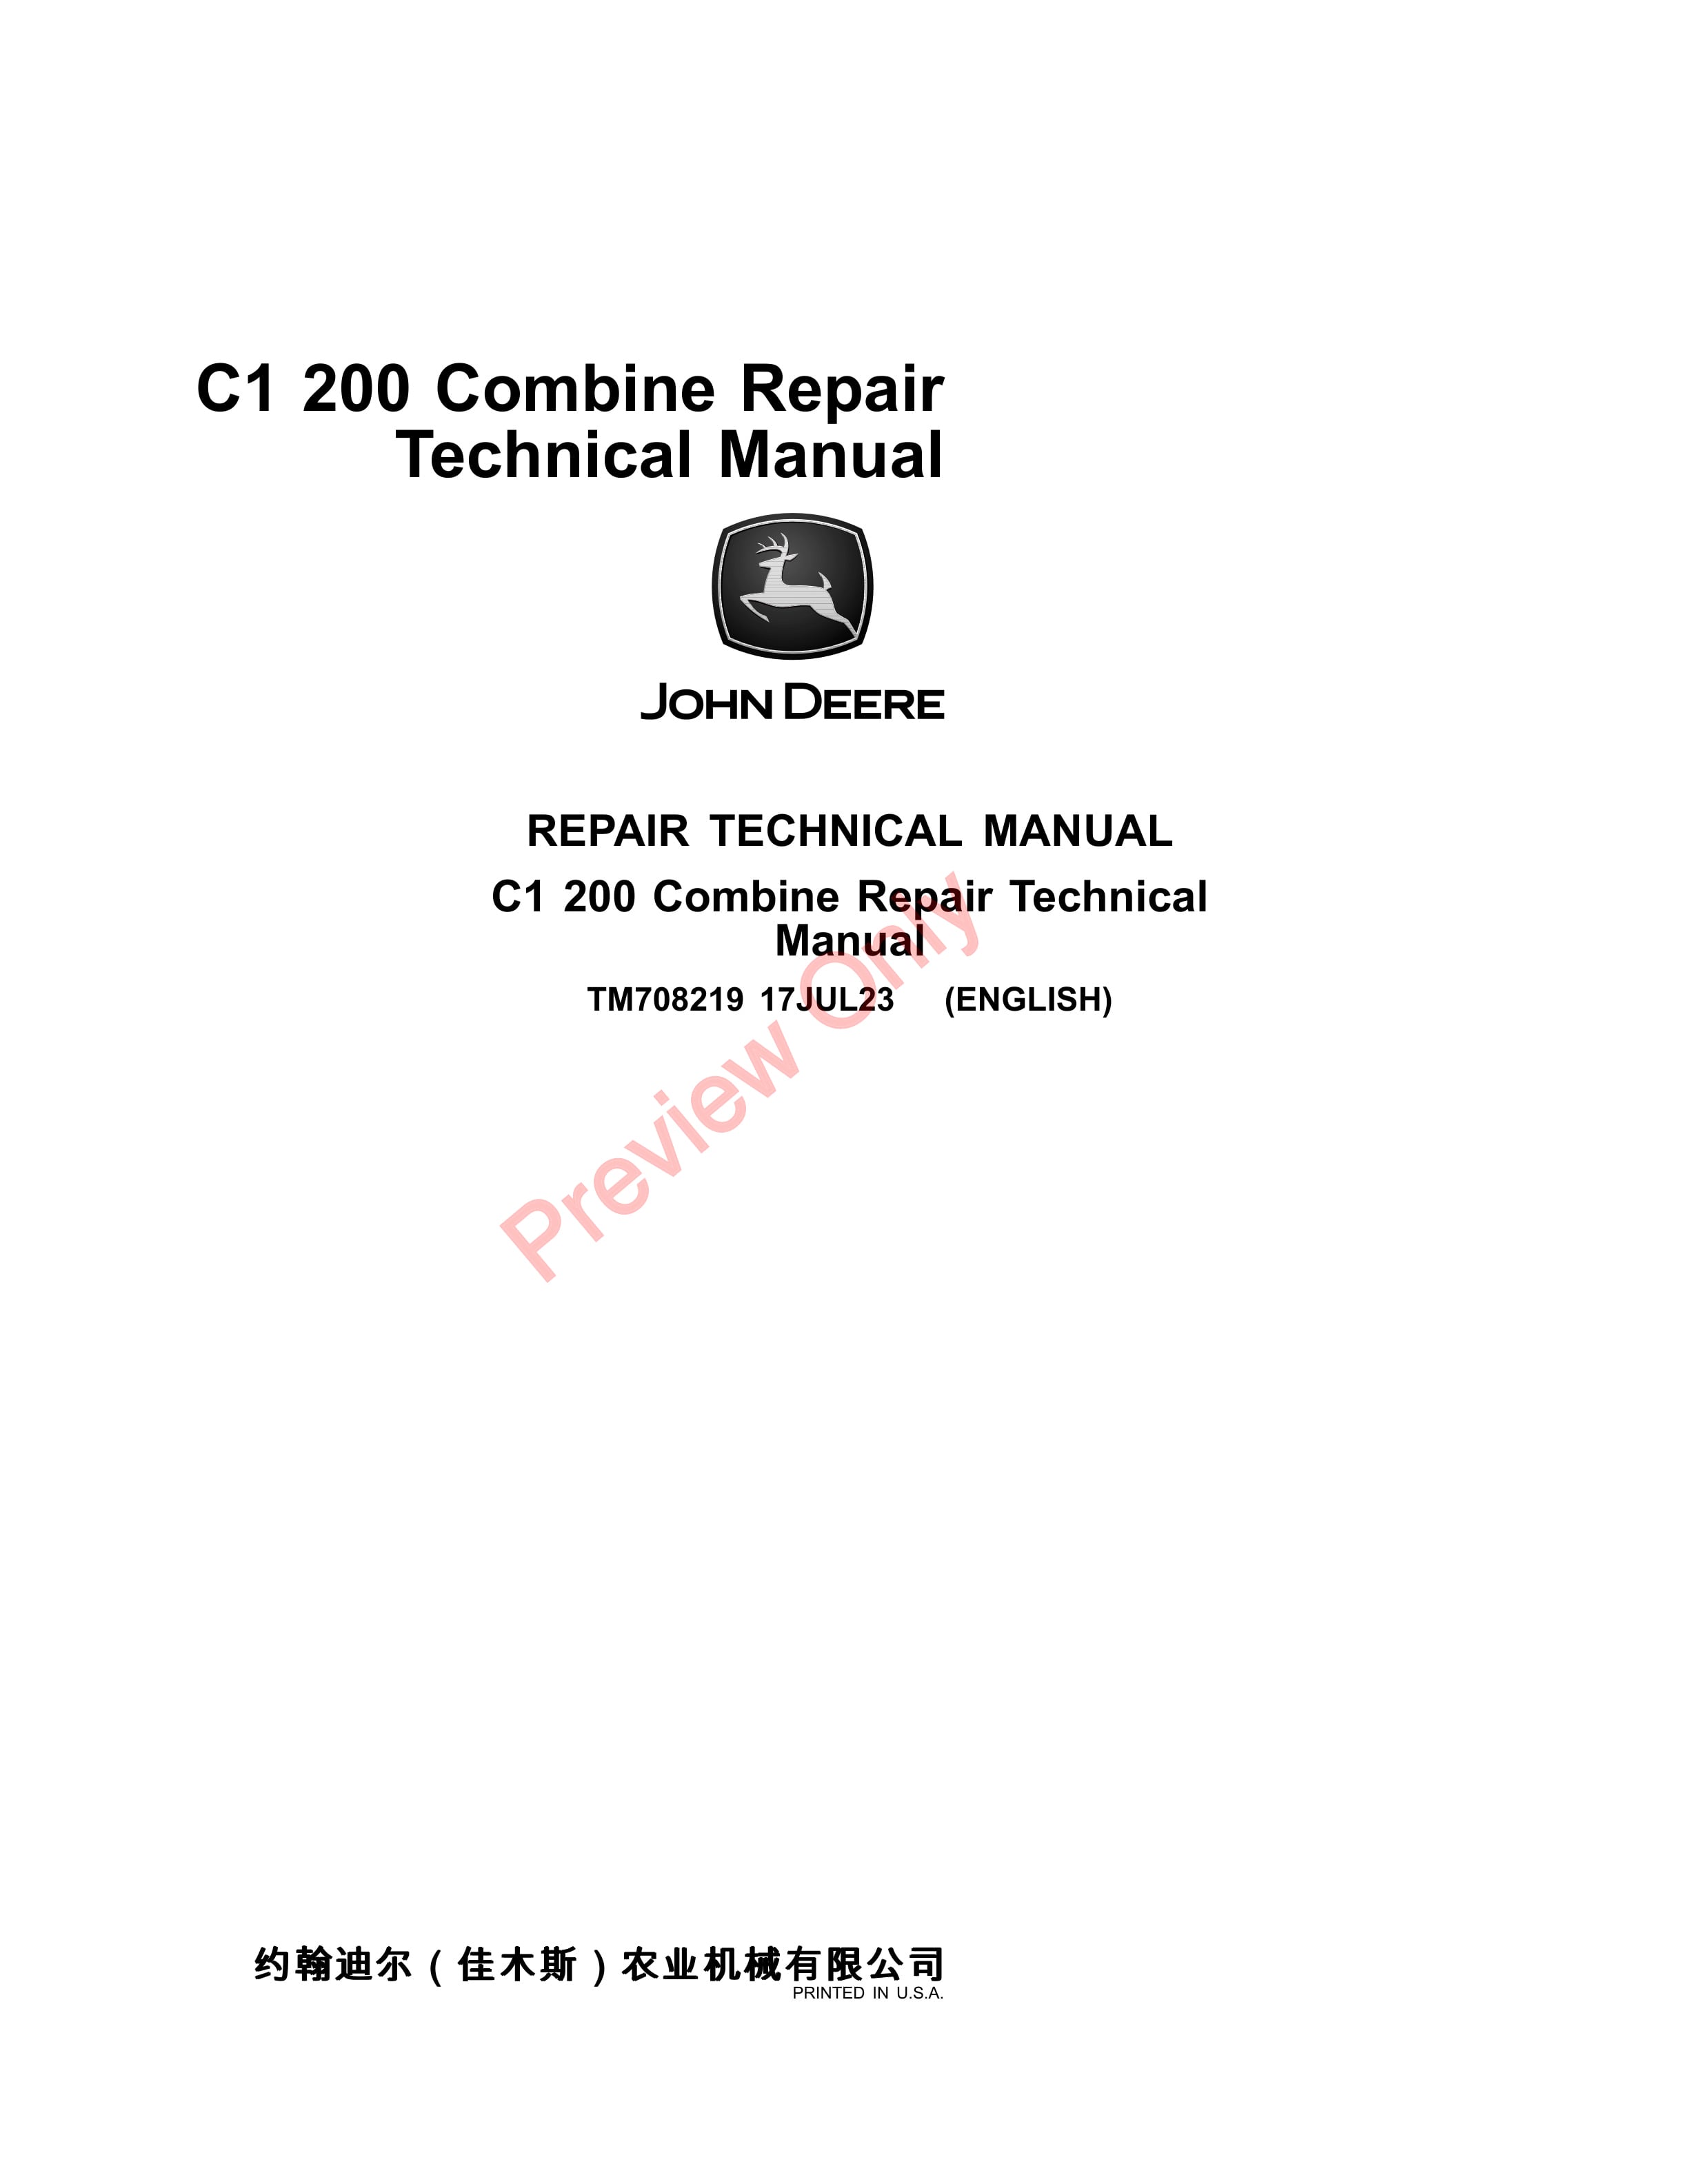 John Deere C1 200 Combine Repair Technical Manual TM708219 17JUL23-1